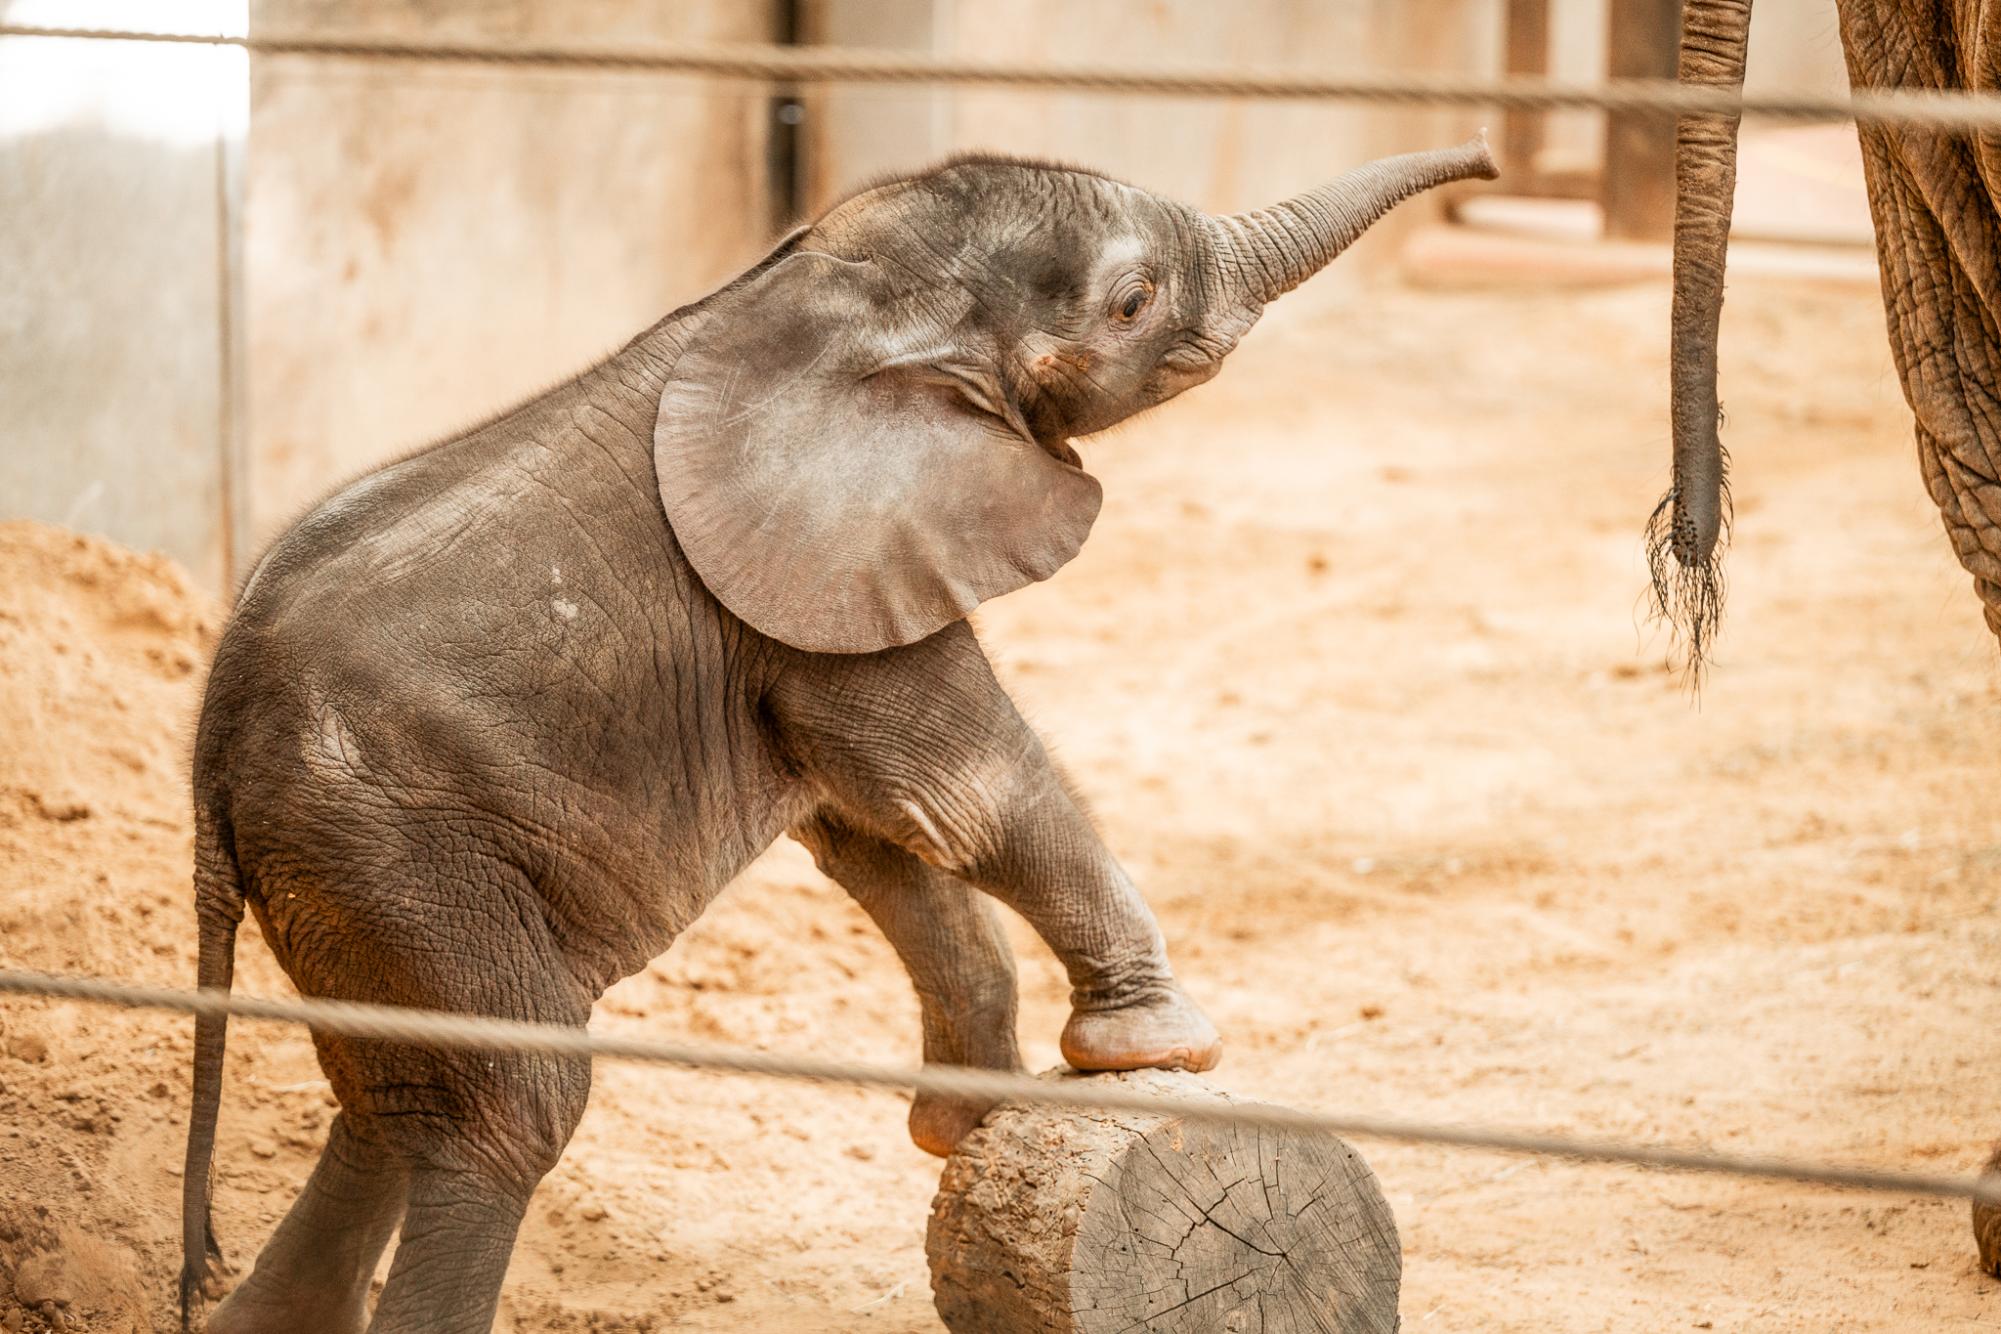 Toledo Zoo’s new elephant makes exhibit debut